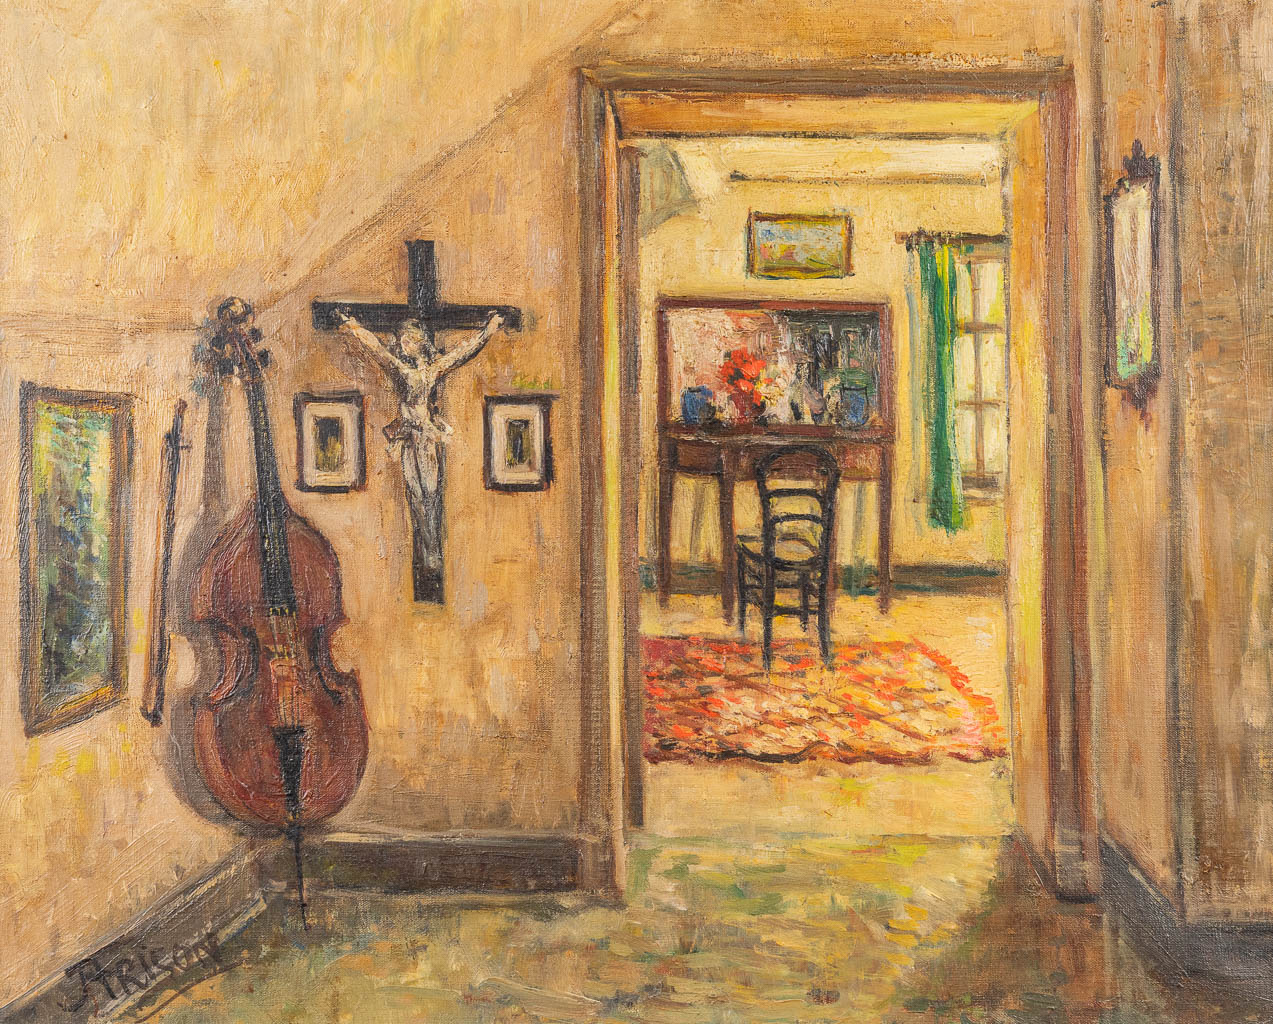  Jehan FRISON (1882-1961) 'Le Violoncelo' oil on canvas. 1957